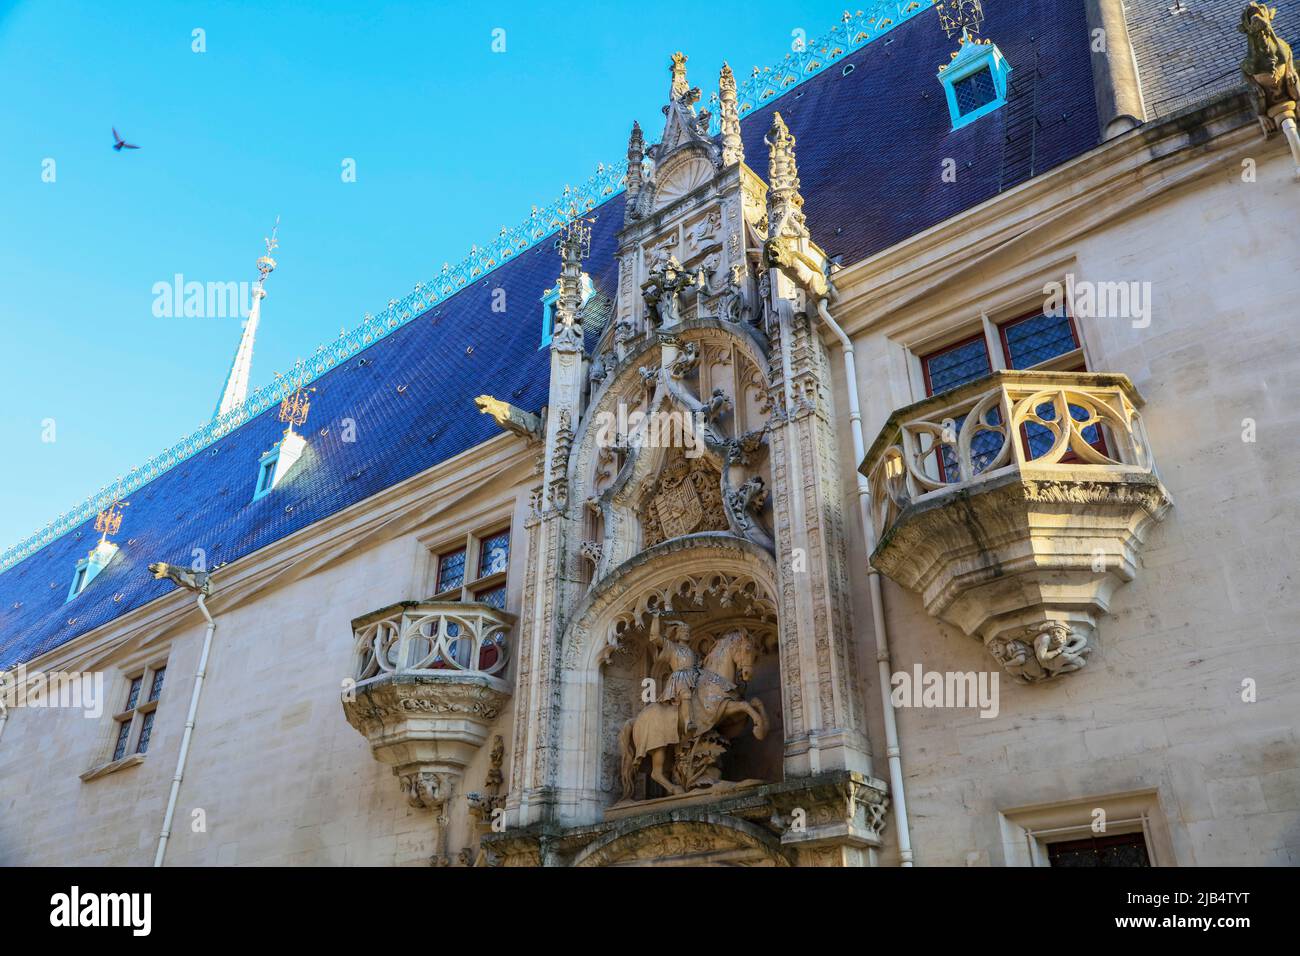 Facciata del Palais des Ducs de Lorraine con statua equestre del Duca Antoine de Lorraine, patrimonio mondiale dell'UNESCO, Nancy, dipartimento di Foto Stock